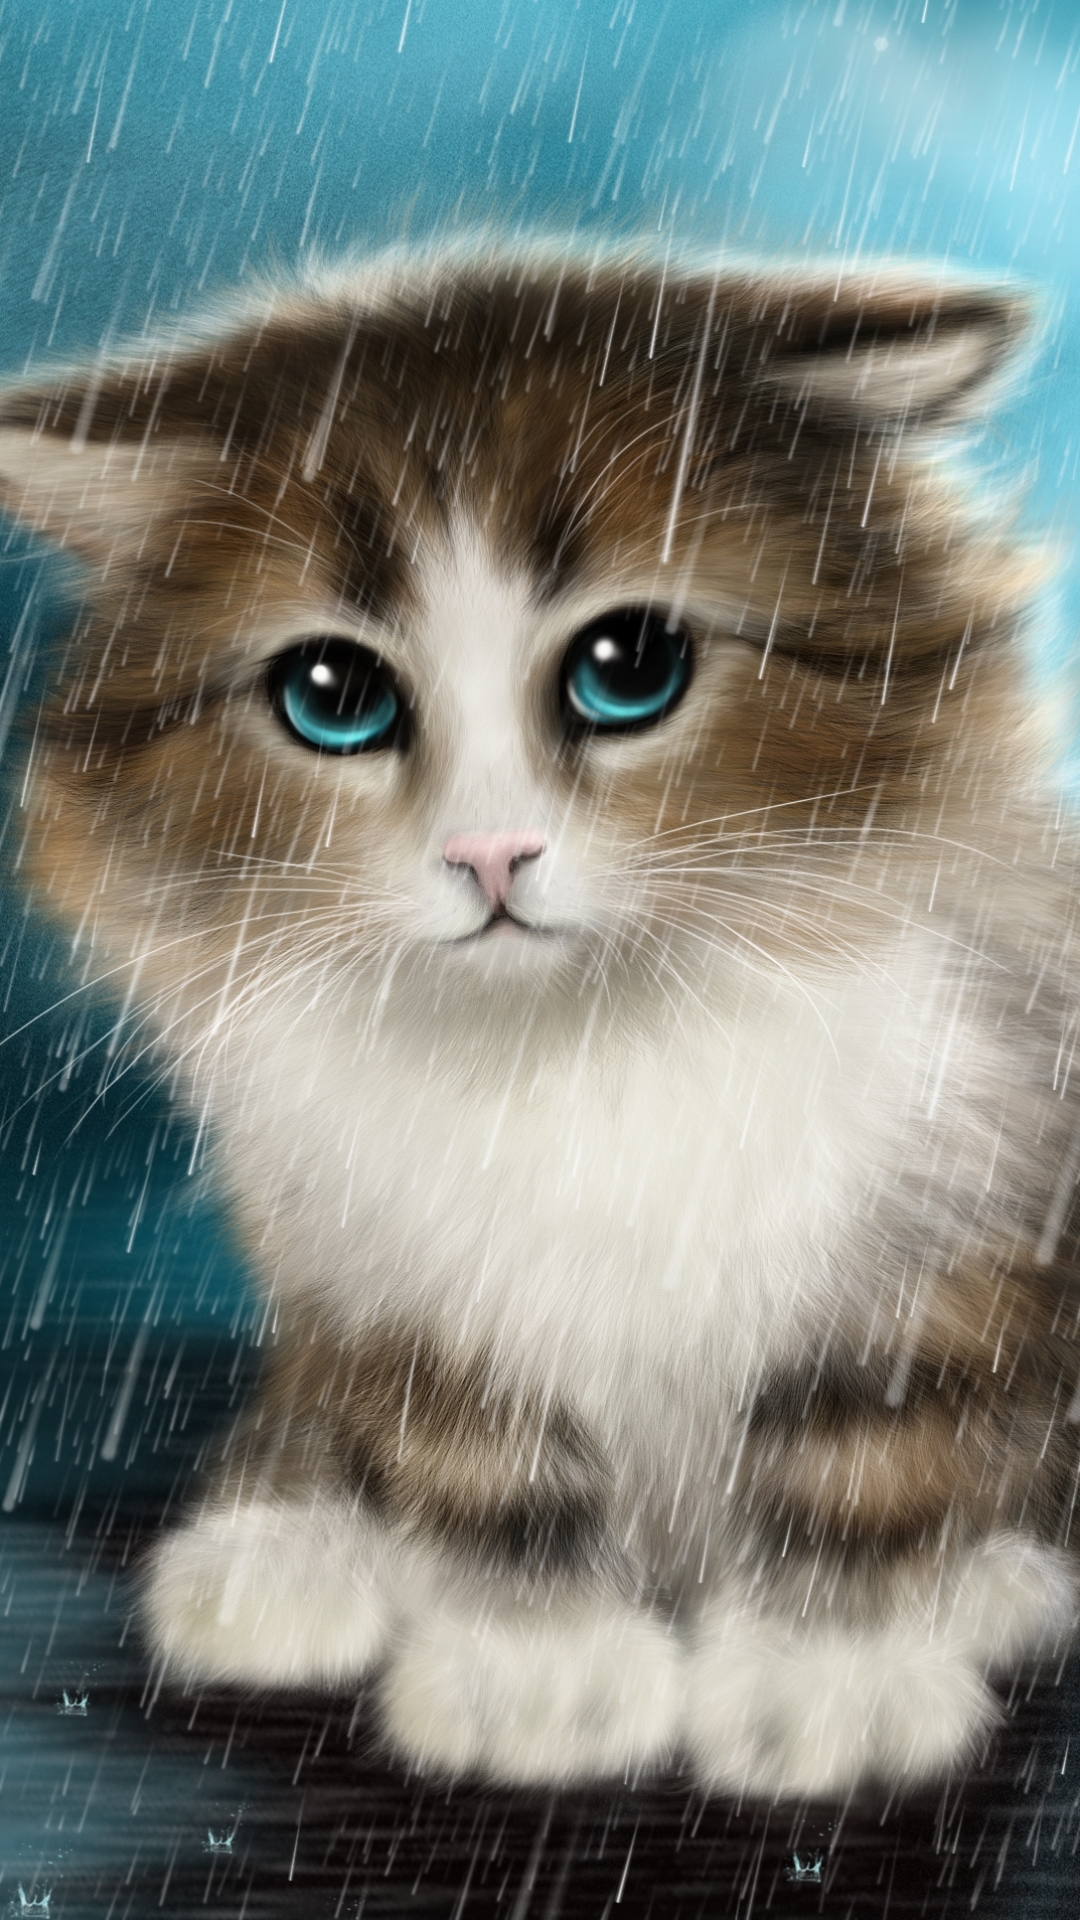 Descarga gratuita de fondo de pantalla para móvil de Animales, Gatos, Lluvia, Gato, Gatito, Pintura, Cuadro, Ojos Azules.